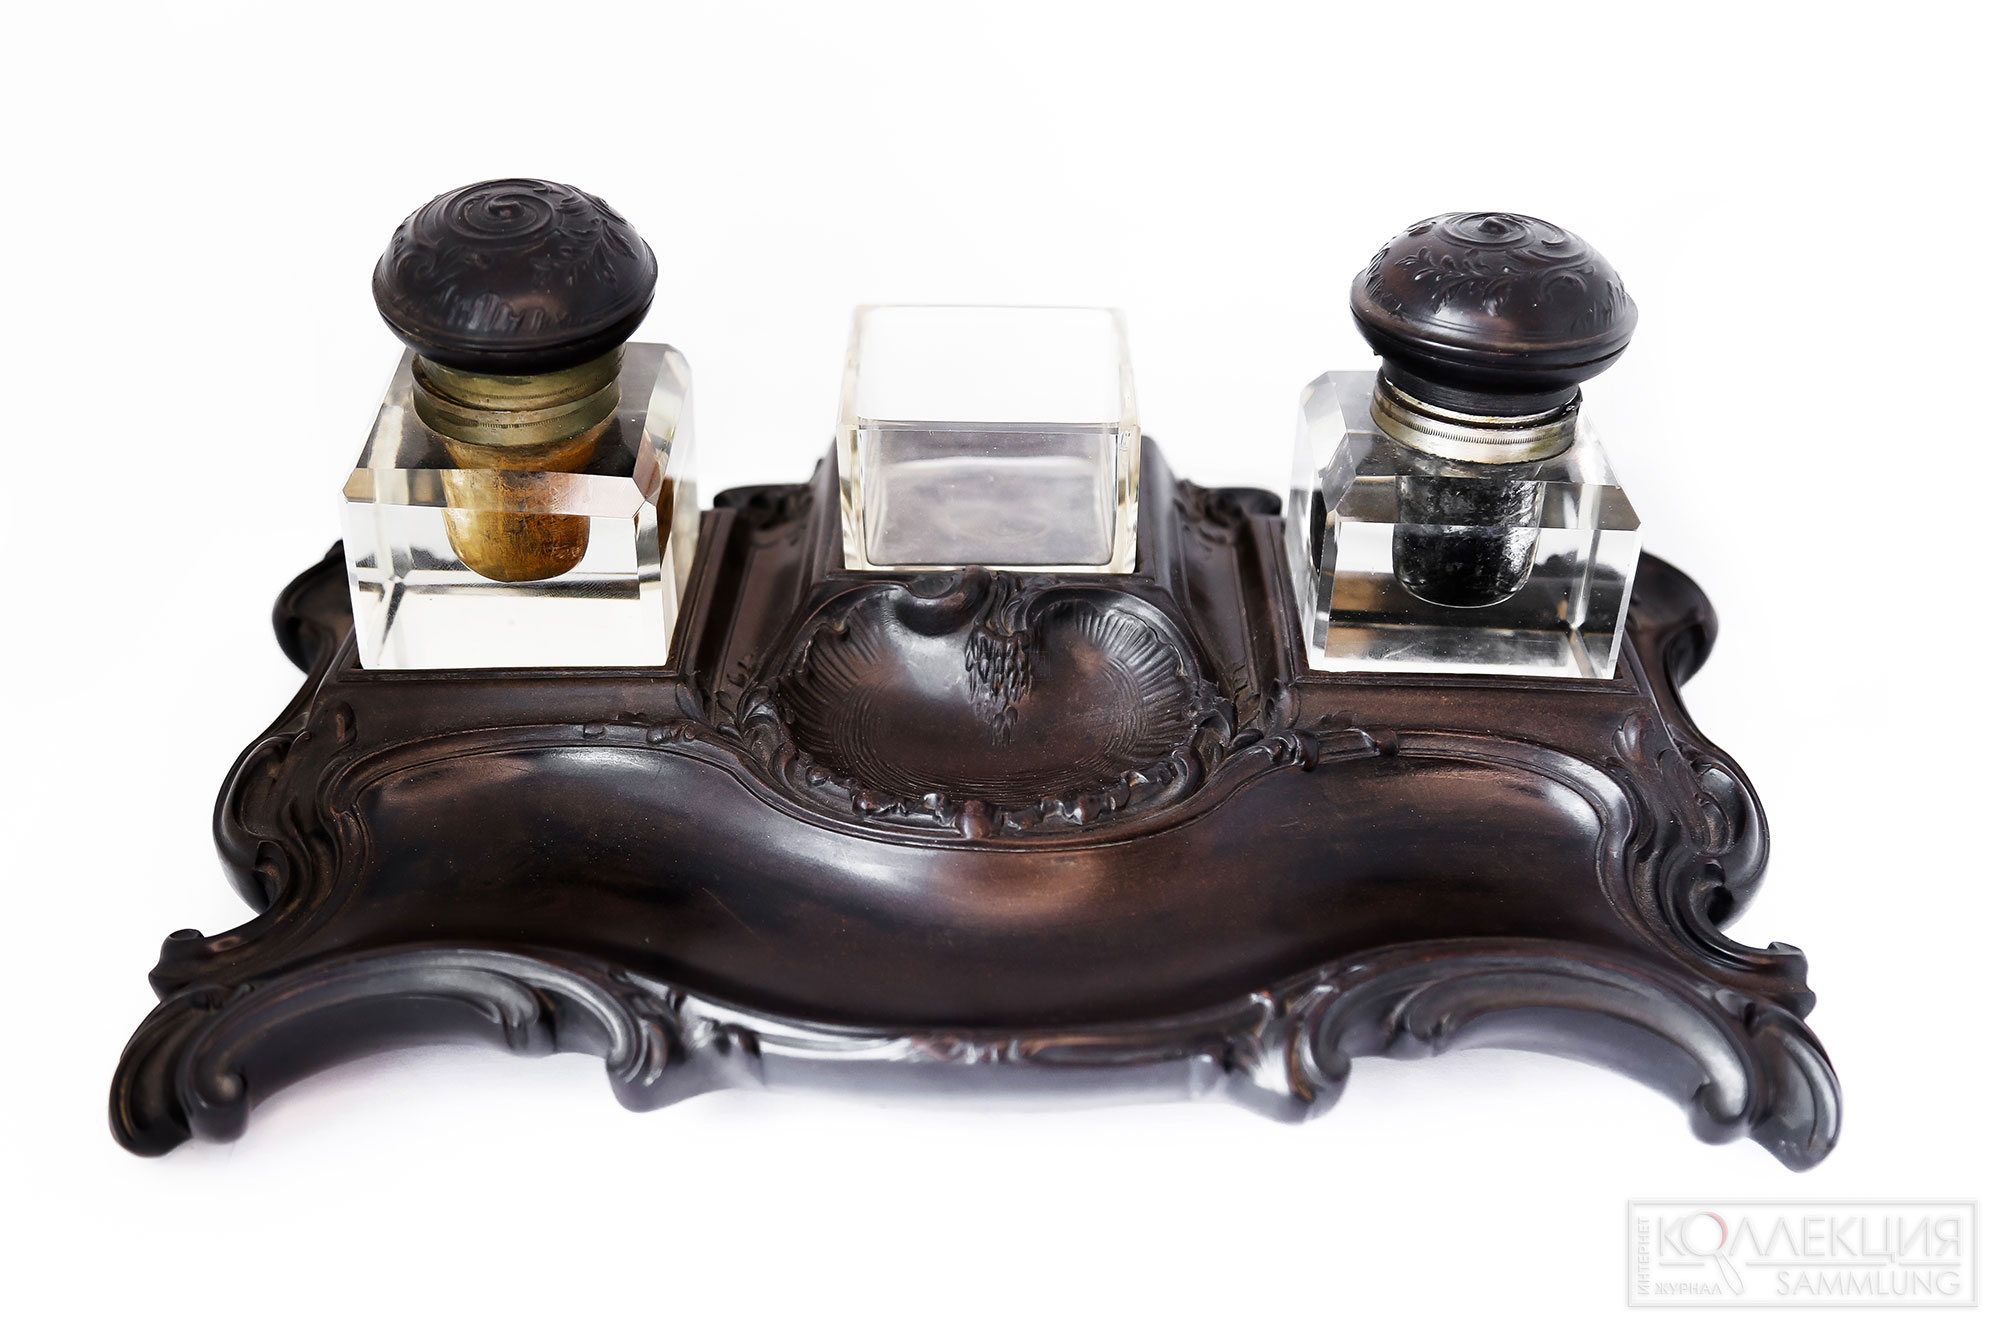 Письменный прибор из двух чернильниц и подставки для перьев, изготовленный во Франции в 1870-х годах, интересен тем, что основание прибора и крышки чернильниц сделаны из первого натурального пластика Bois Durci (буа дюрси)